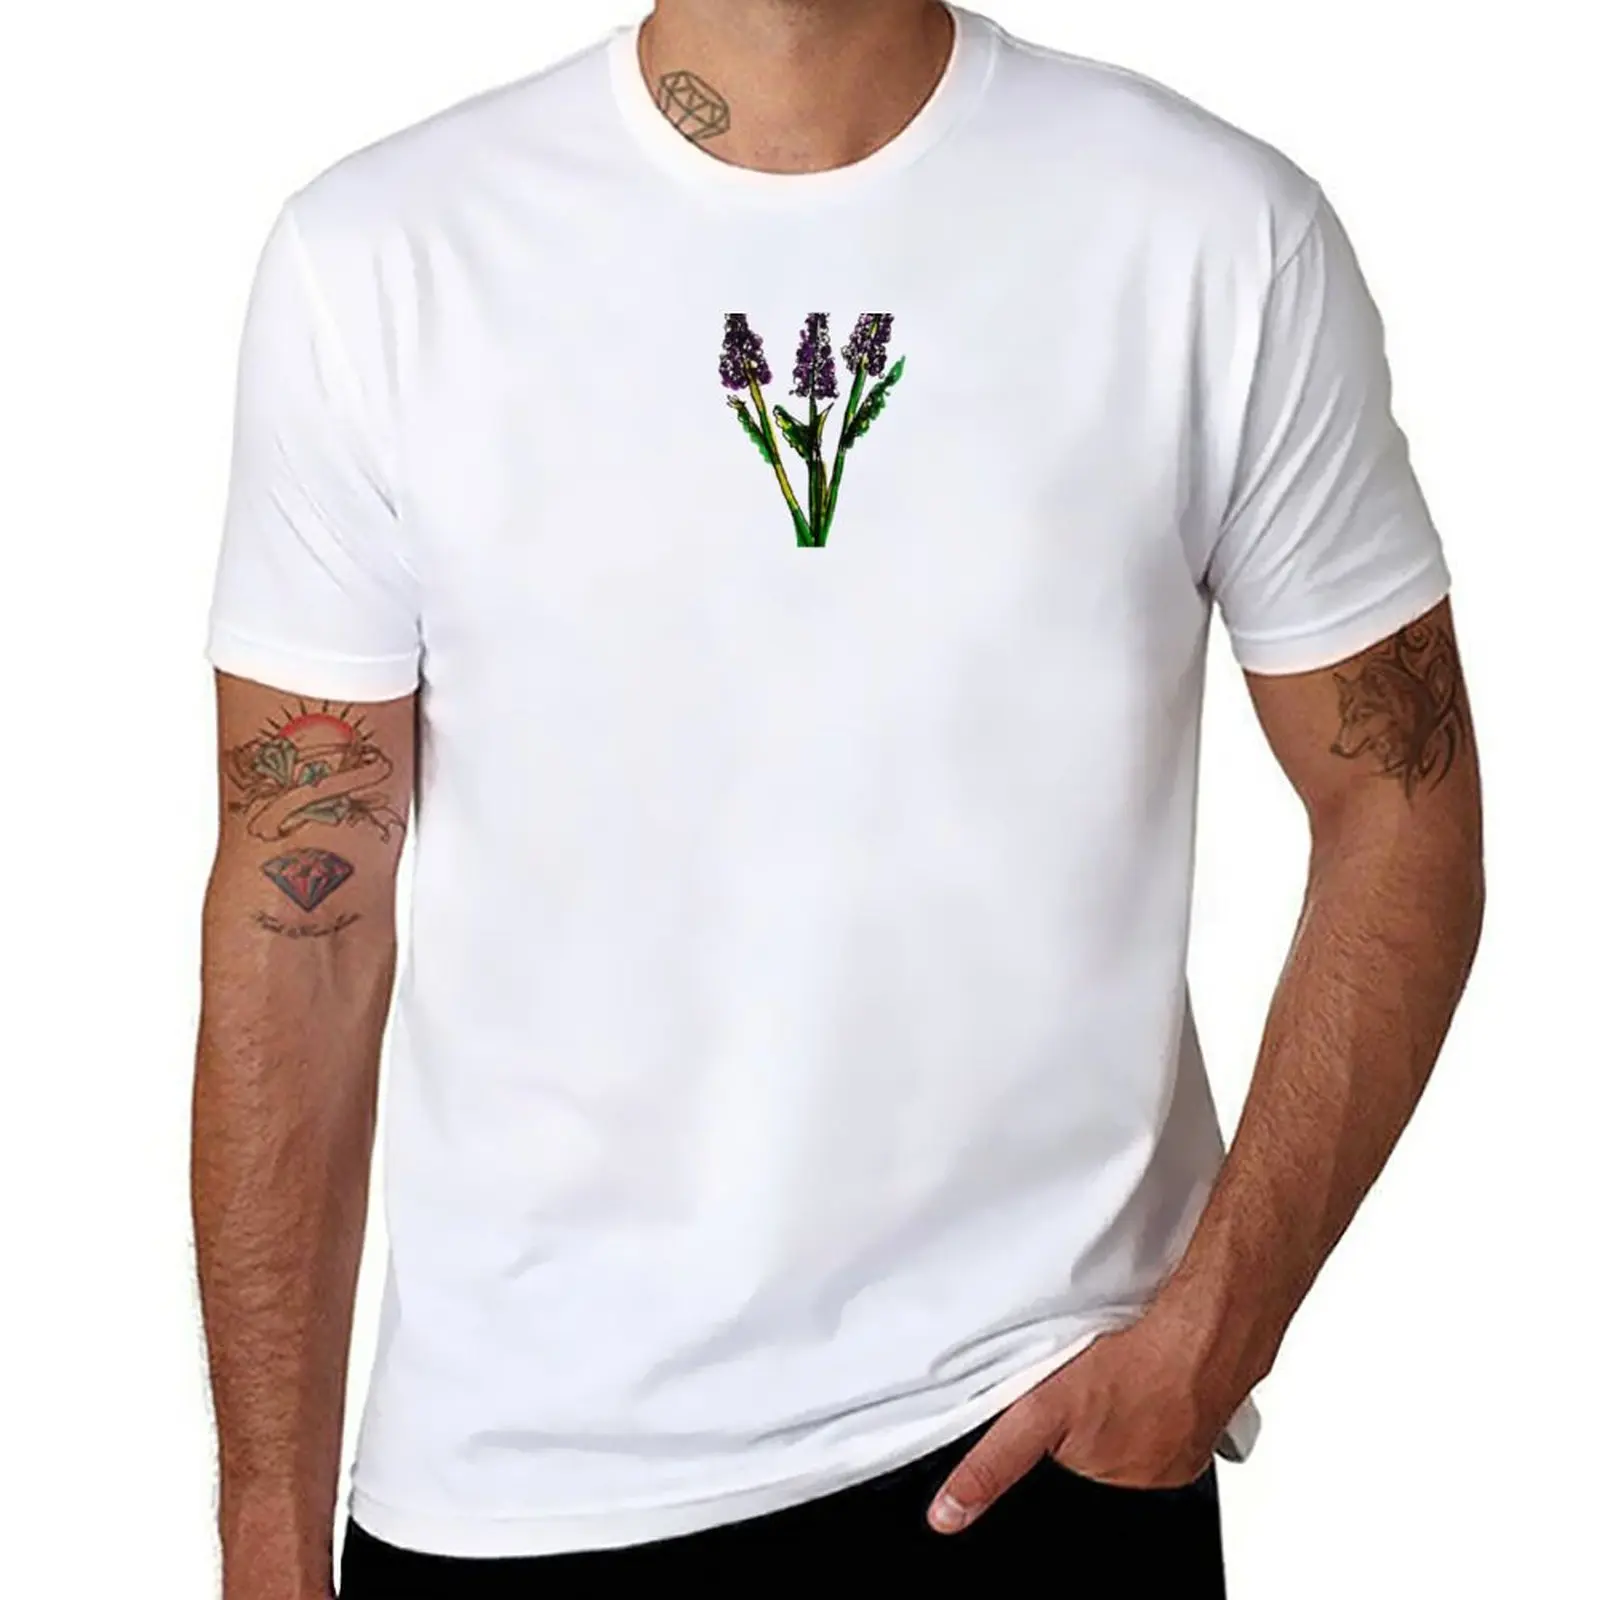 Новая лавандовая футболка, одежда с аниме, эстетическая одежда, одежда для мужчин Изображение 0